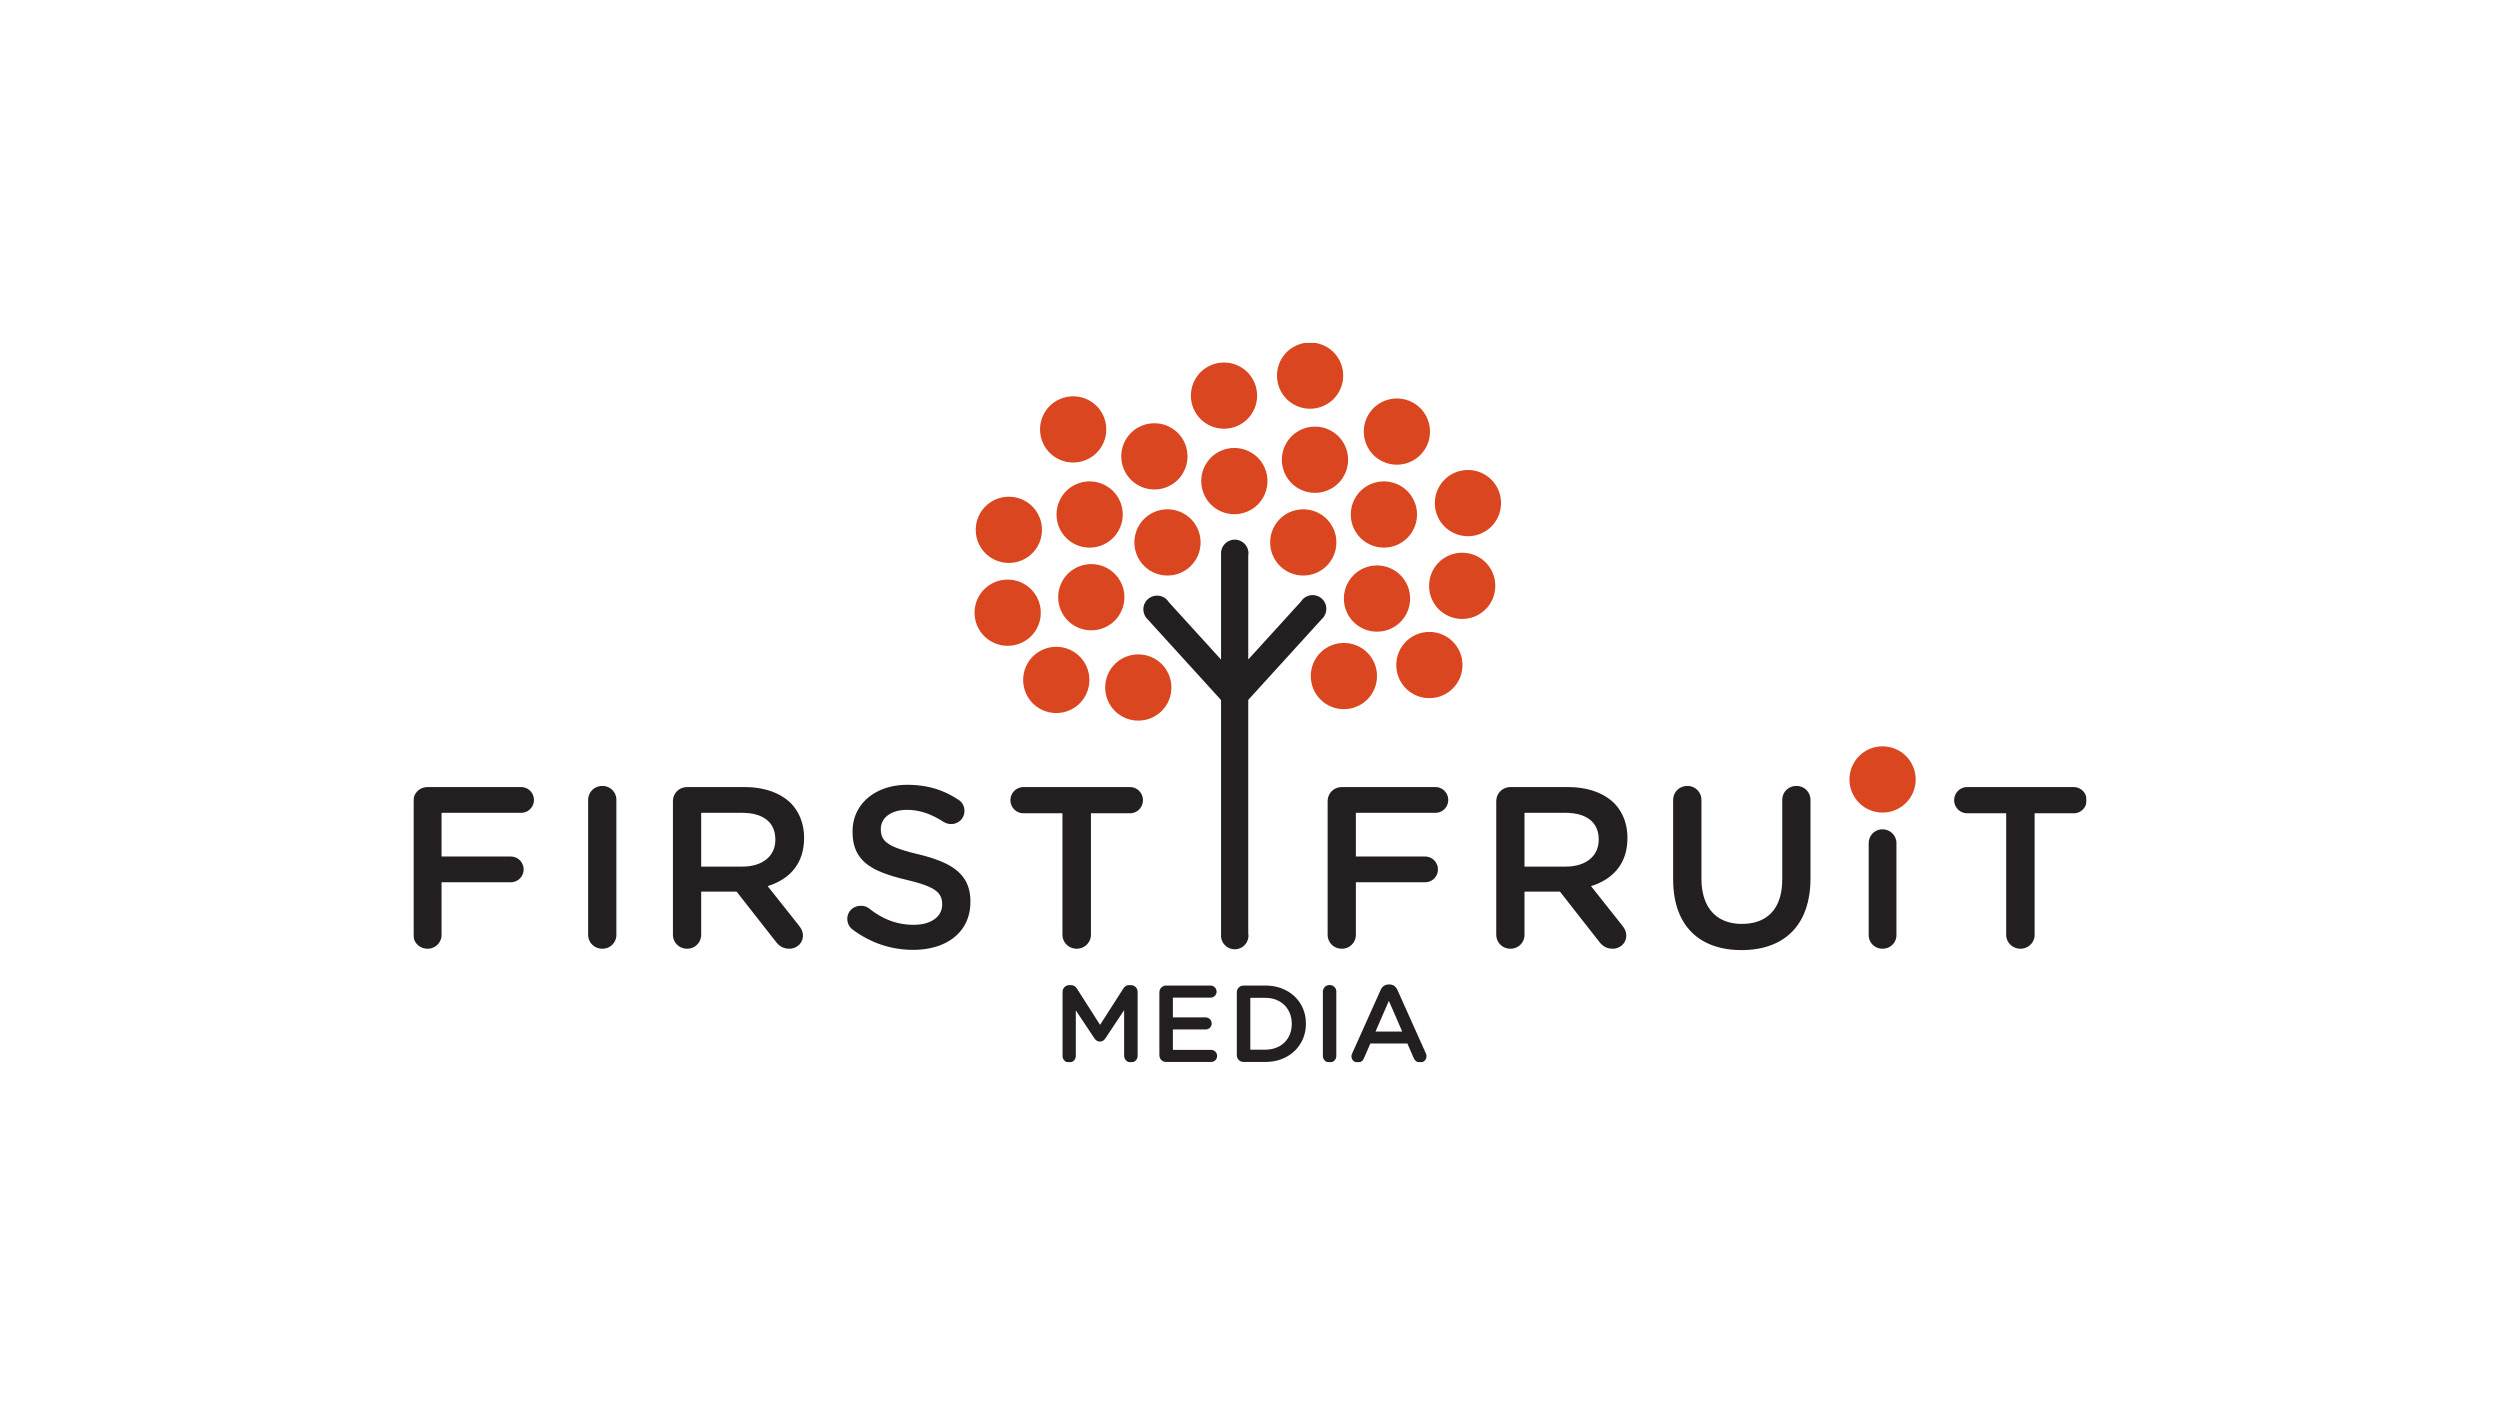 Full logo and wordmark for First Fruit Media.